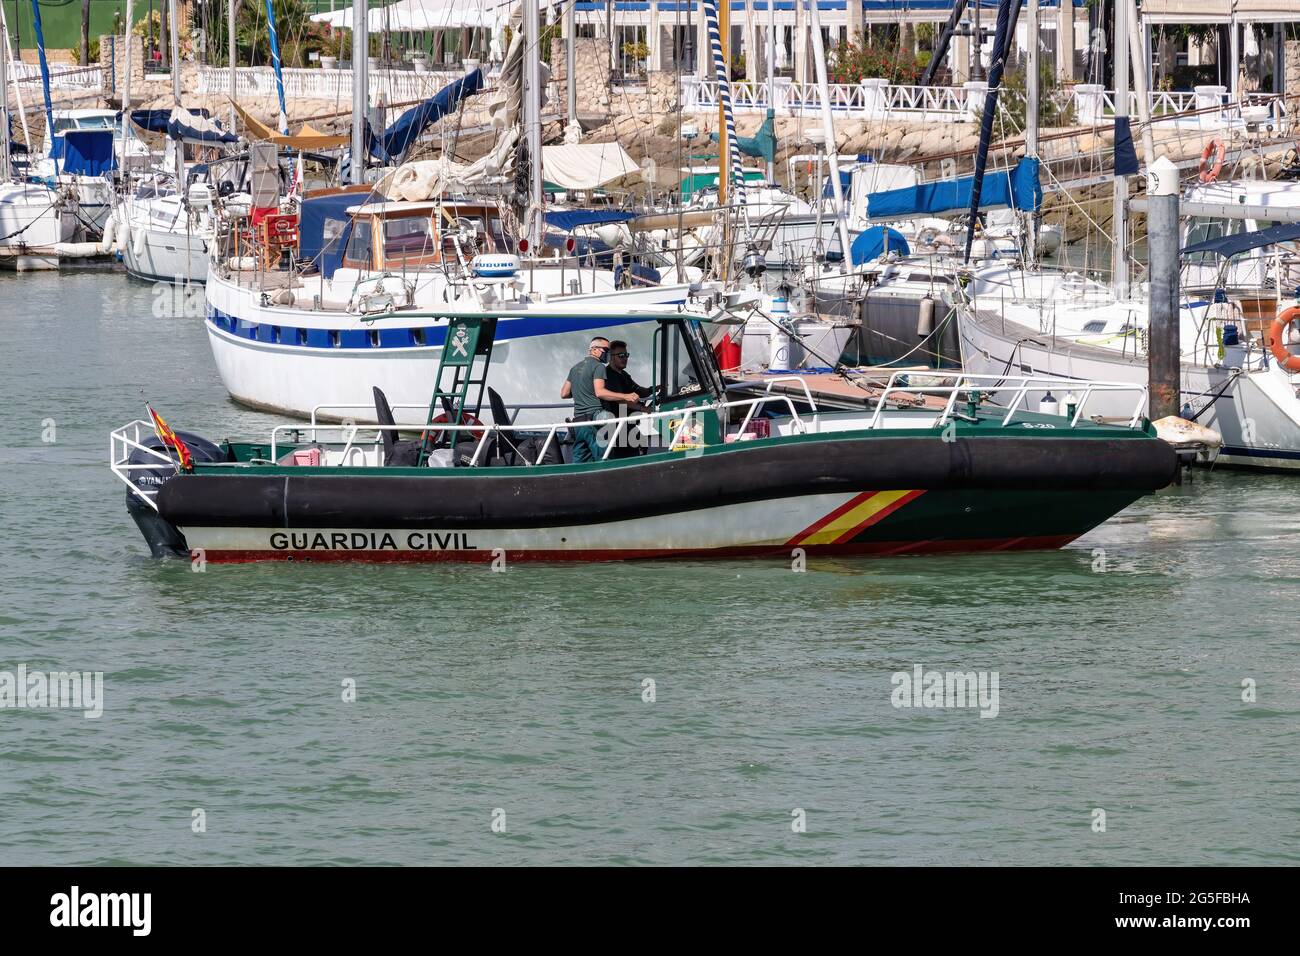 El Puerto de Santa María, Cádiz, Spanien - 16. Juni 2021: Schnellboot der Guardia Civil verlässt den Hafen. Staatliche Sicherheitskräfte und -Organe, Andalus Stockfoto